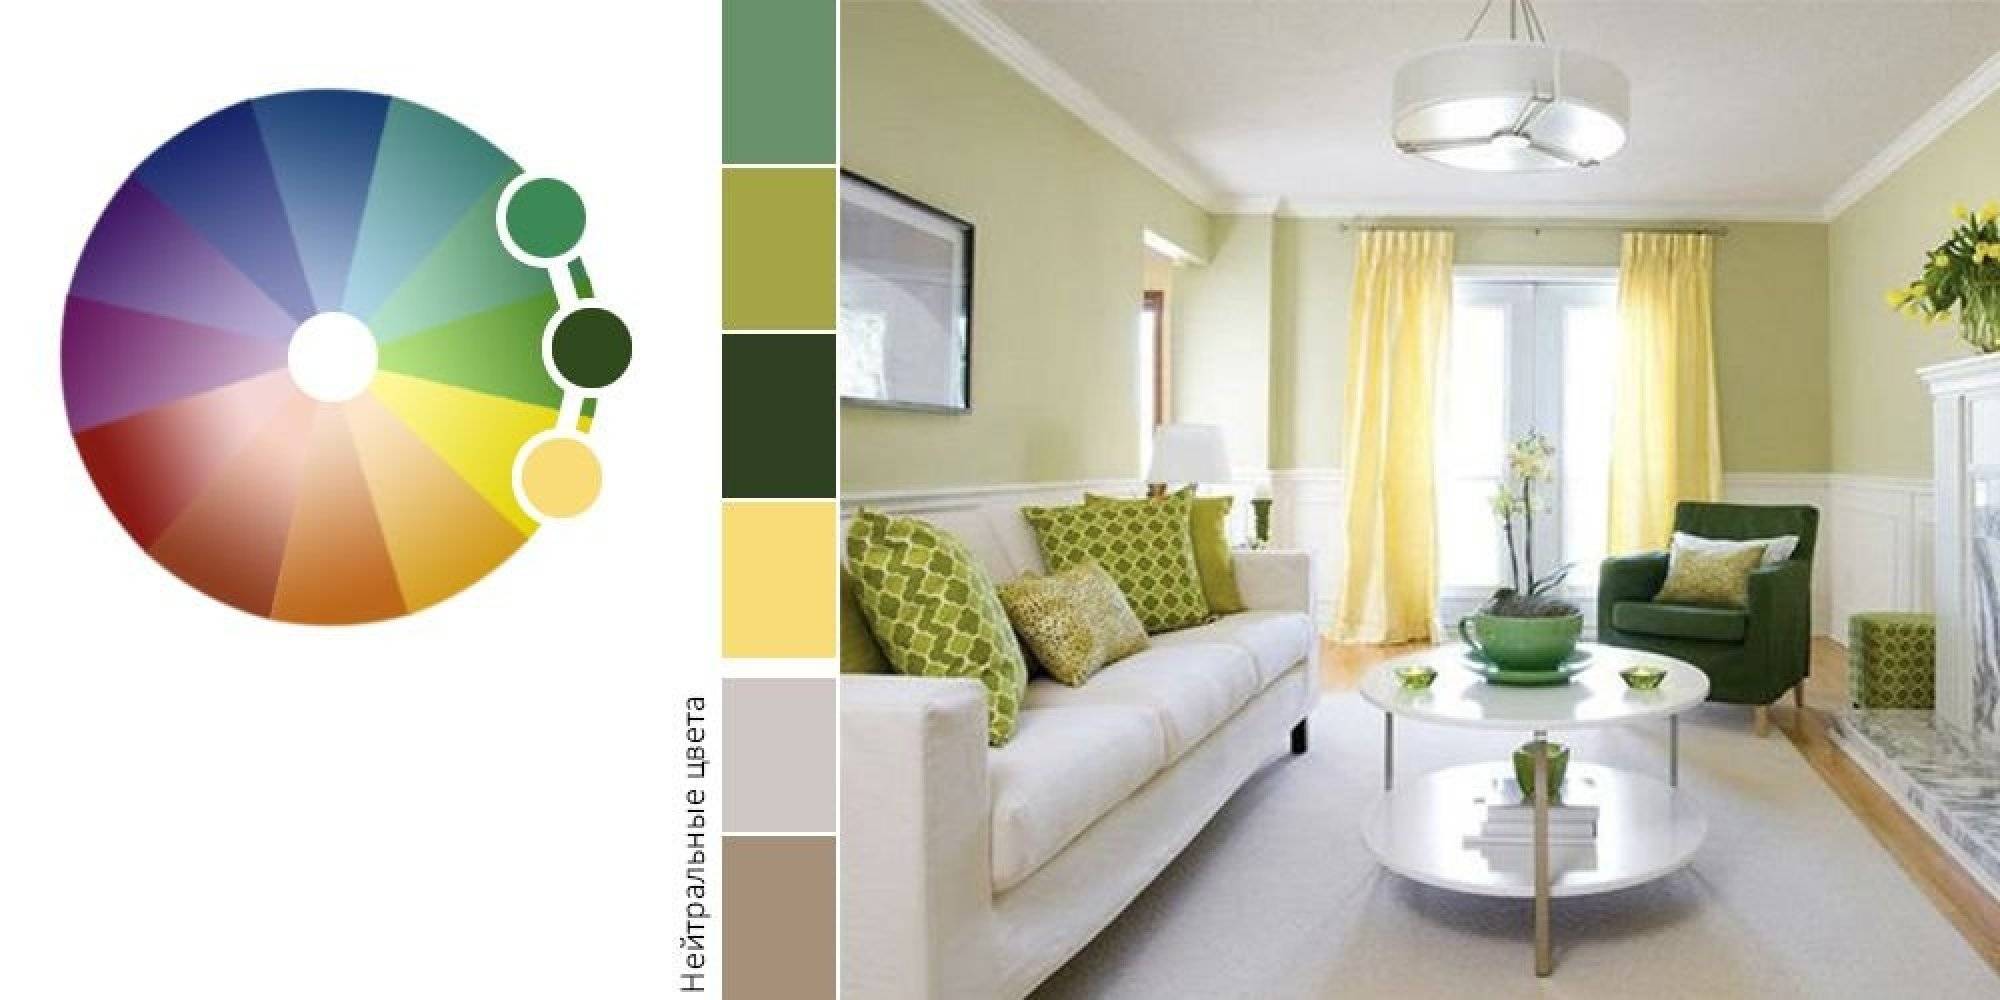 Как подобрать мебель по цвету к полу или к цвету стен, какой цвет сочетать с белыми стенами в современном стиле